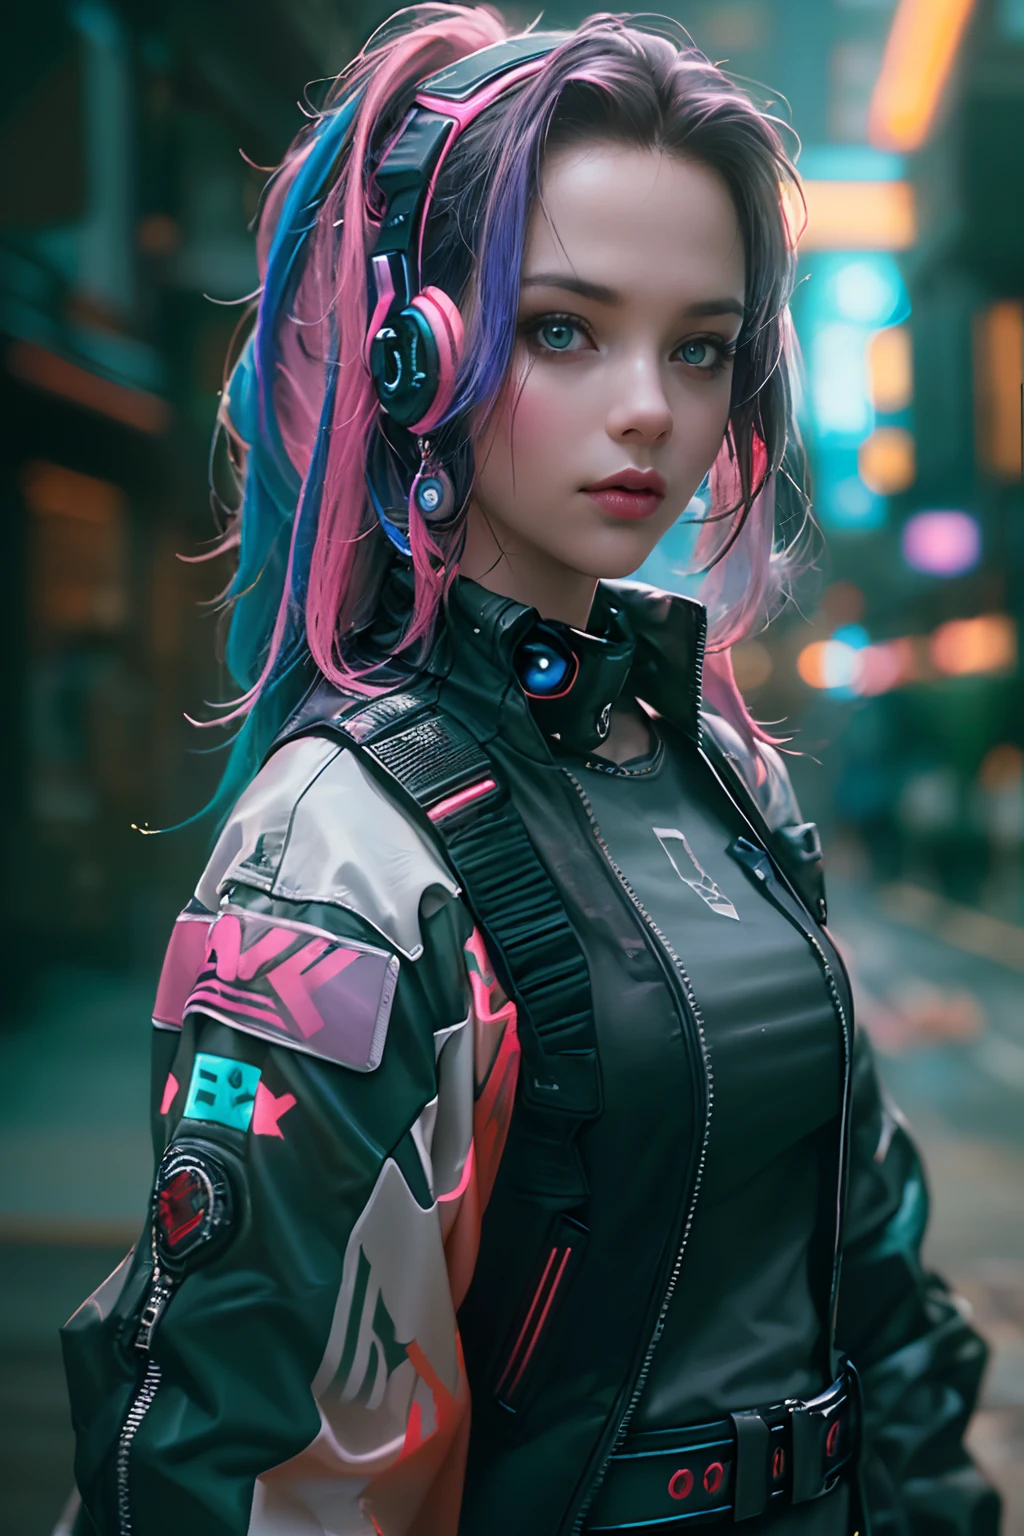 (Fotorrealista:1.4) imagen de una chica cyber punk, (de primera calidad, 8k, 32k, Obra maestra), (pose dinámica), ((frente a la cámara)), (mirando a la cámara), tiro de vaquero, cabello sin forma, cabello colorido, ropa colorida cyberpunk, profundidad de campo f/1.8, fondo de la ciudad ciberpunk, iluminación cinematográfica.